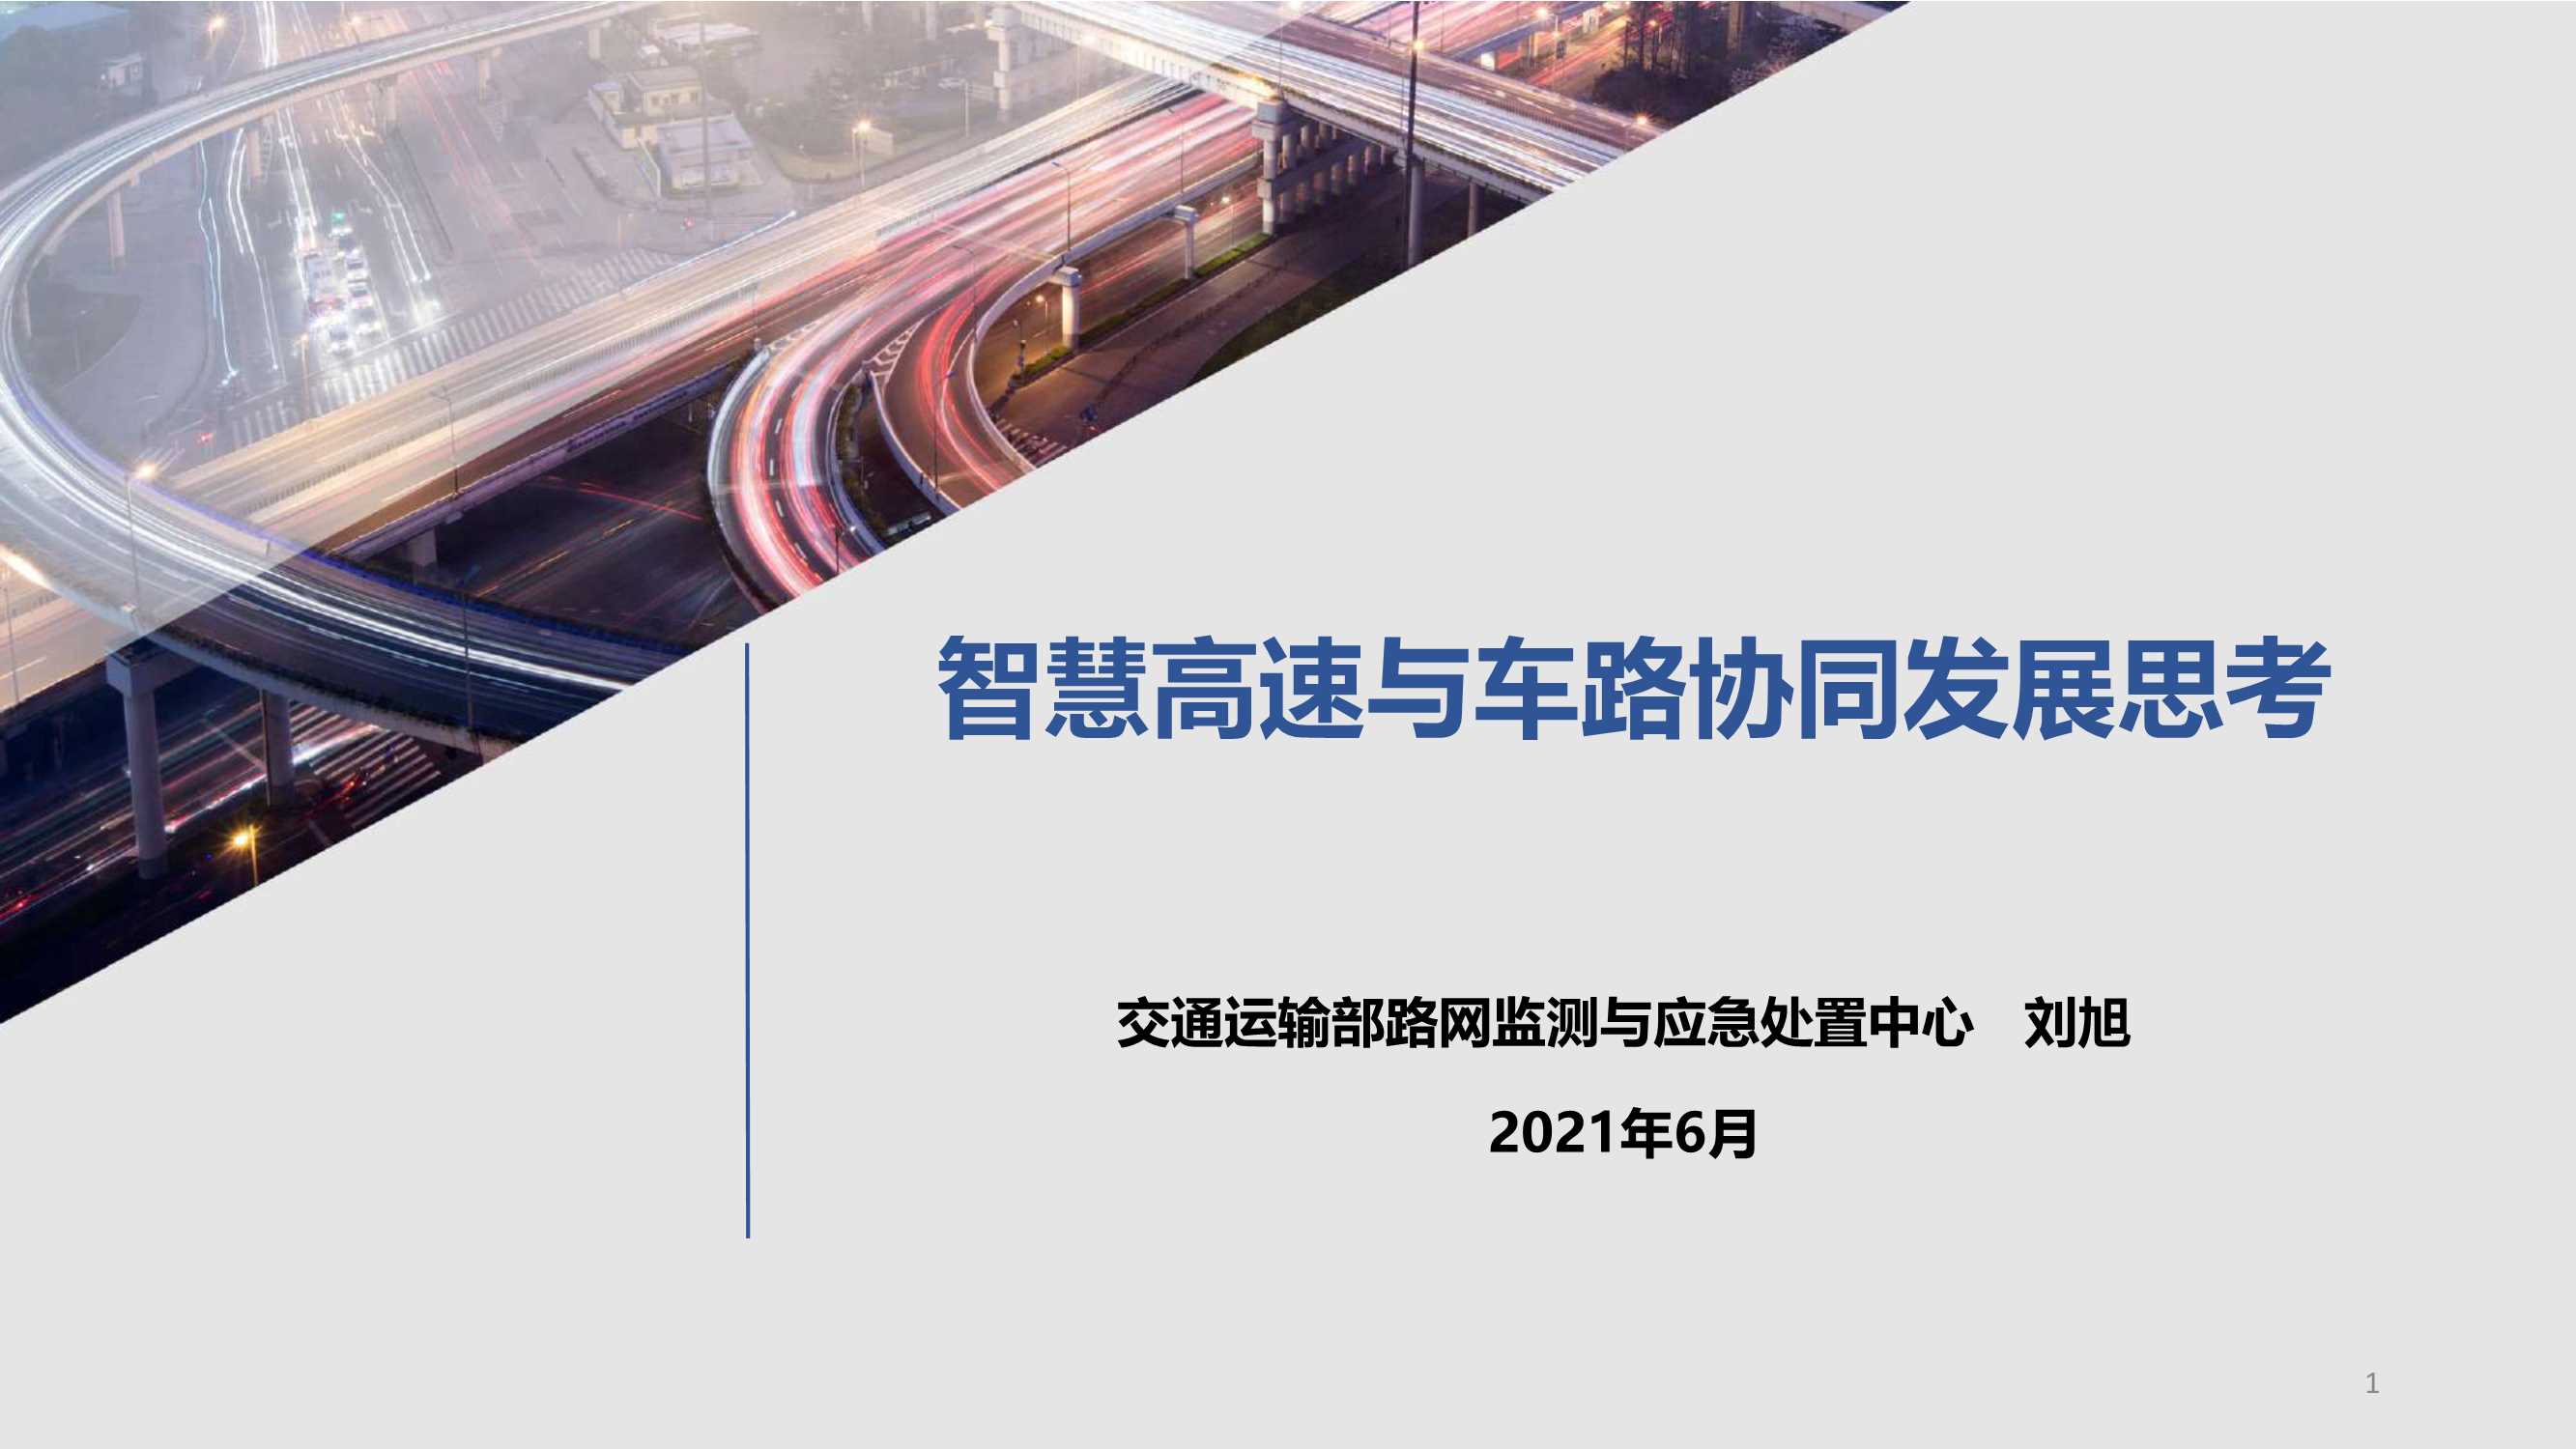 智慧高速与车路协同发展思考-刘旭-2021.04-15页